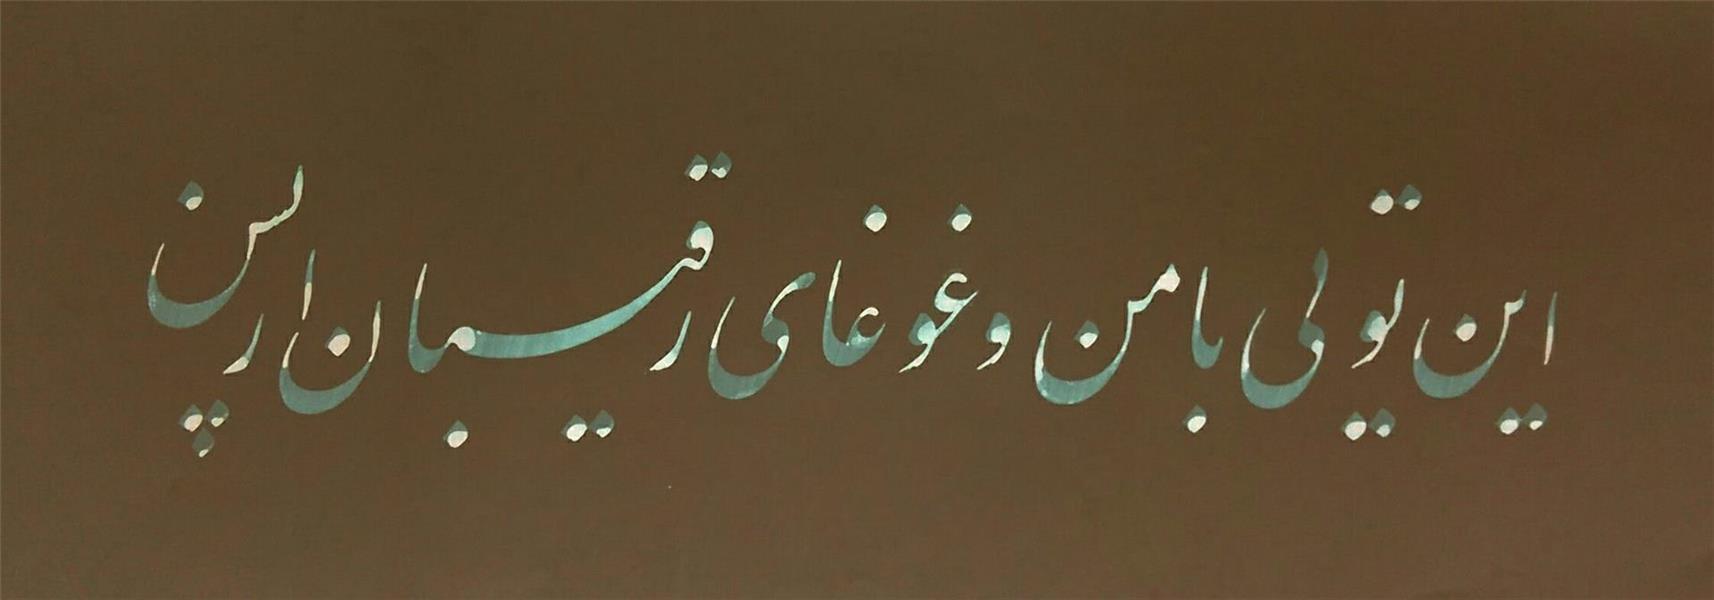 هنر خوشنویسی محفل خوشنویسی Gholamreza safaralizadeh خط غلامرضاصفرعلیزاده